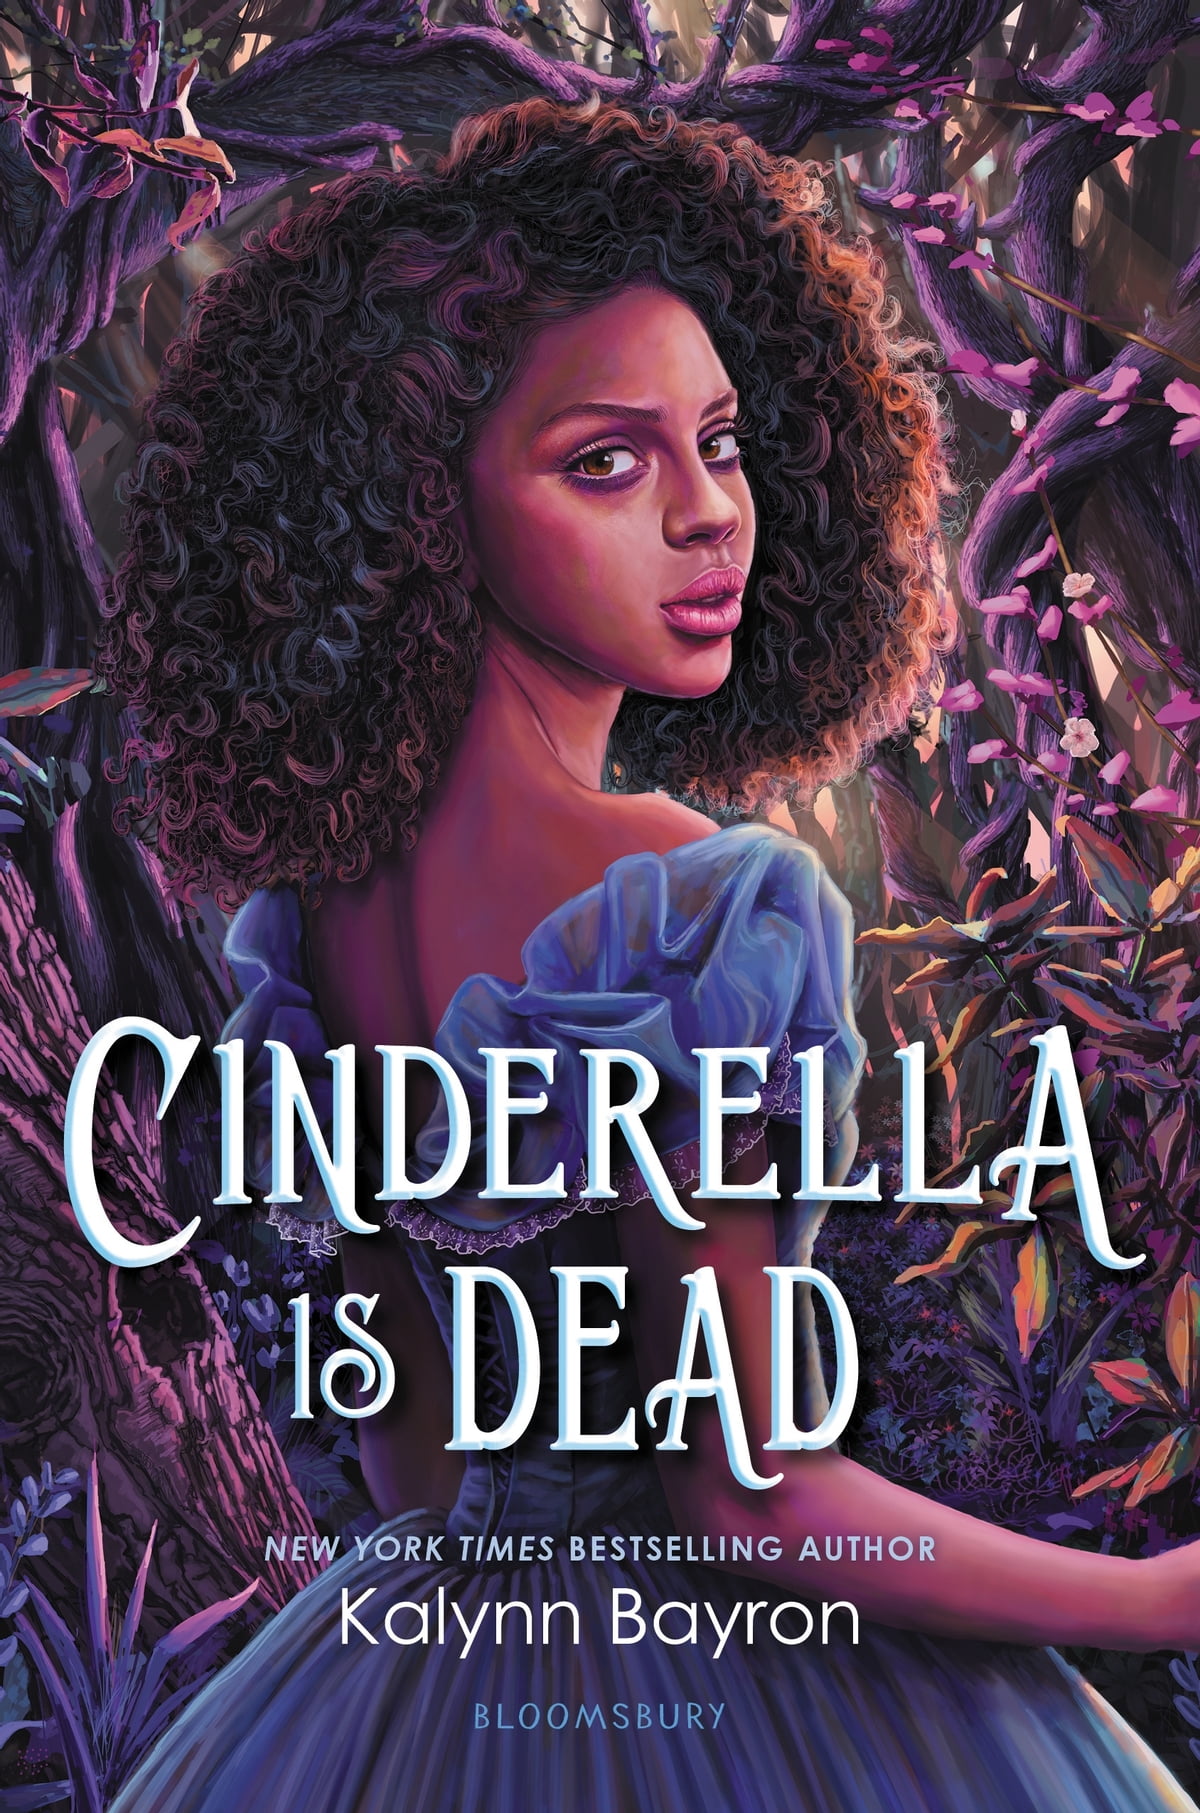 Cinderella Is Dead by Kalynn Bayron ePub Download